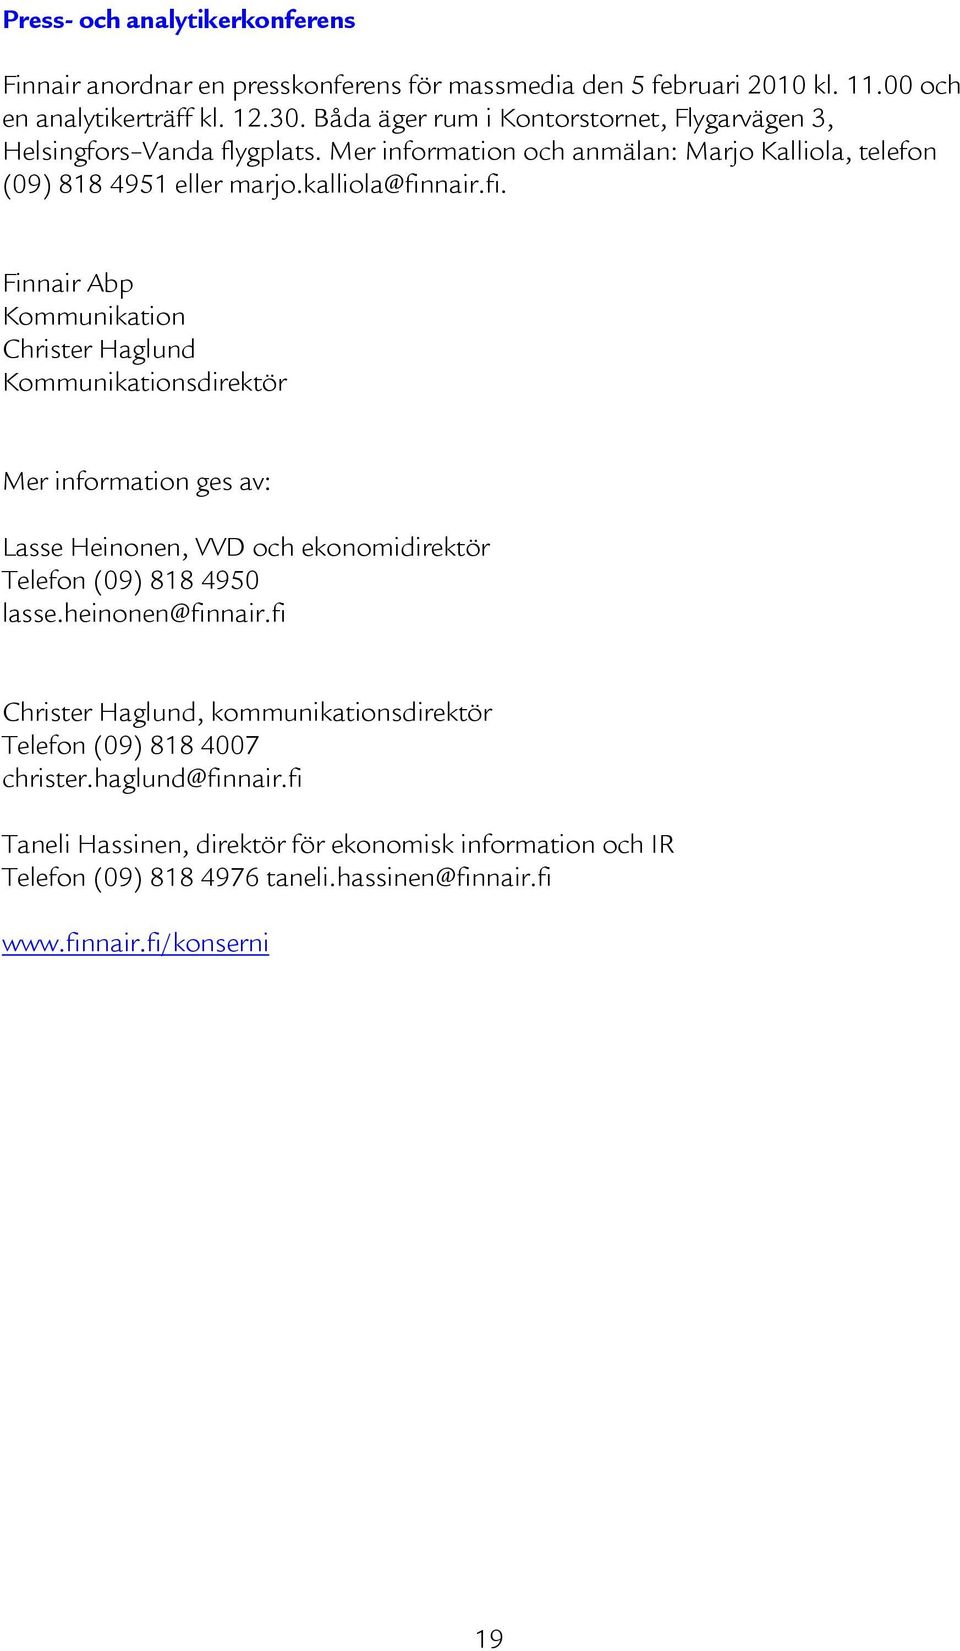 nair.fi. Finnair Abp Kommunikation Christer Haglund Kommunikationsdirektör Mer information ges av: Lasse Heinonen, VVD och ekonomidirektör Telefon (09) 818 4950 lasse.